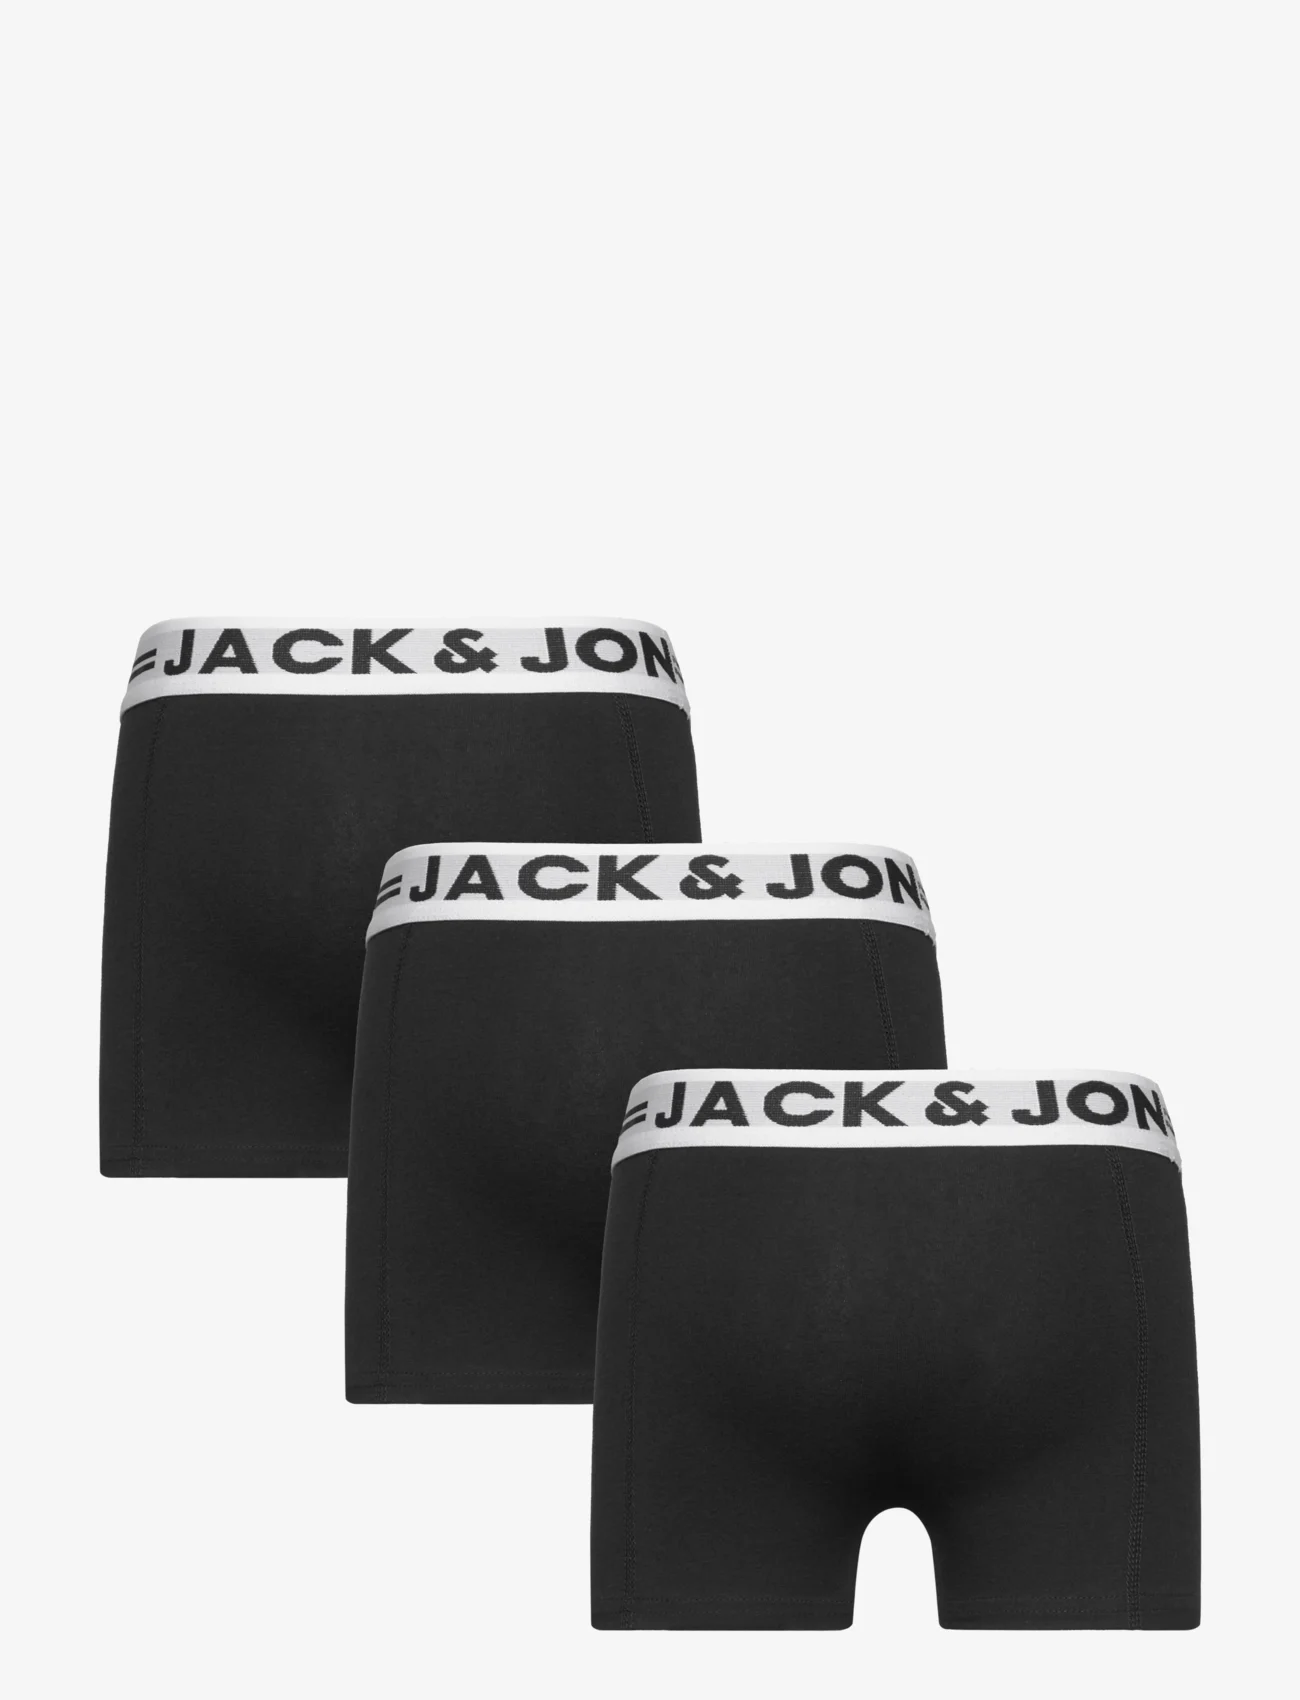 Jack & Jones - SENSE TRUNKS 3-PACK NOOS MNI - kalsonger - black - 1